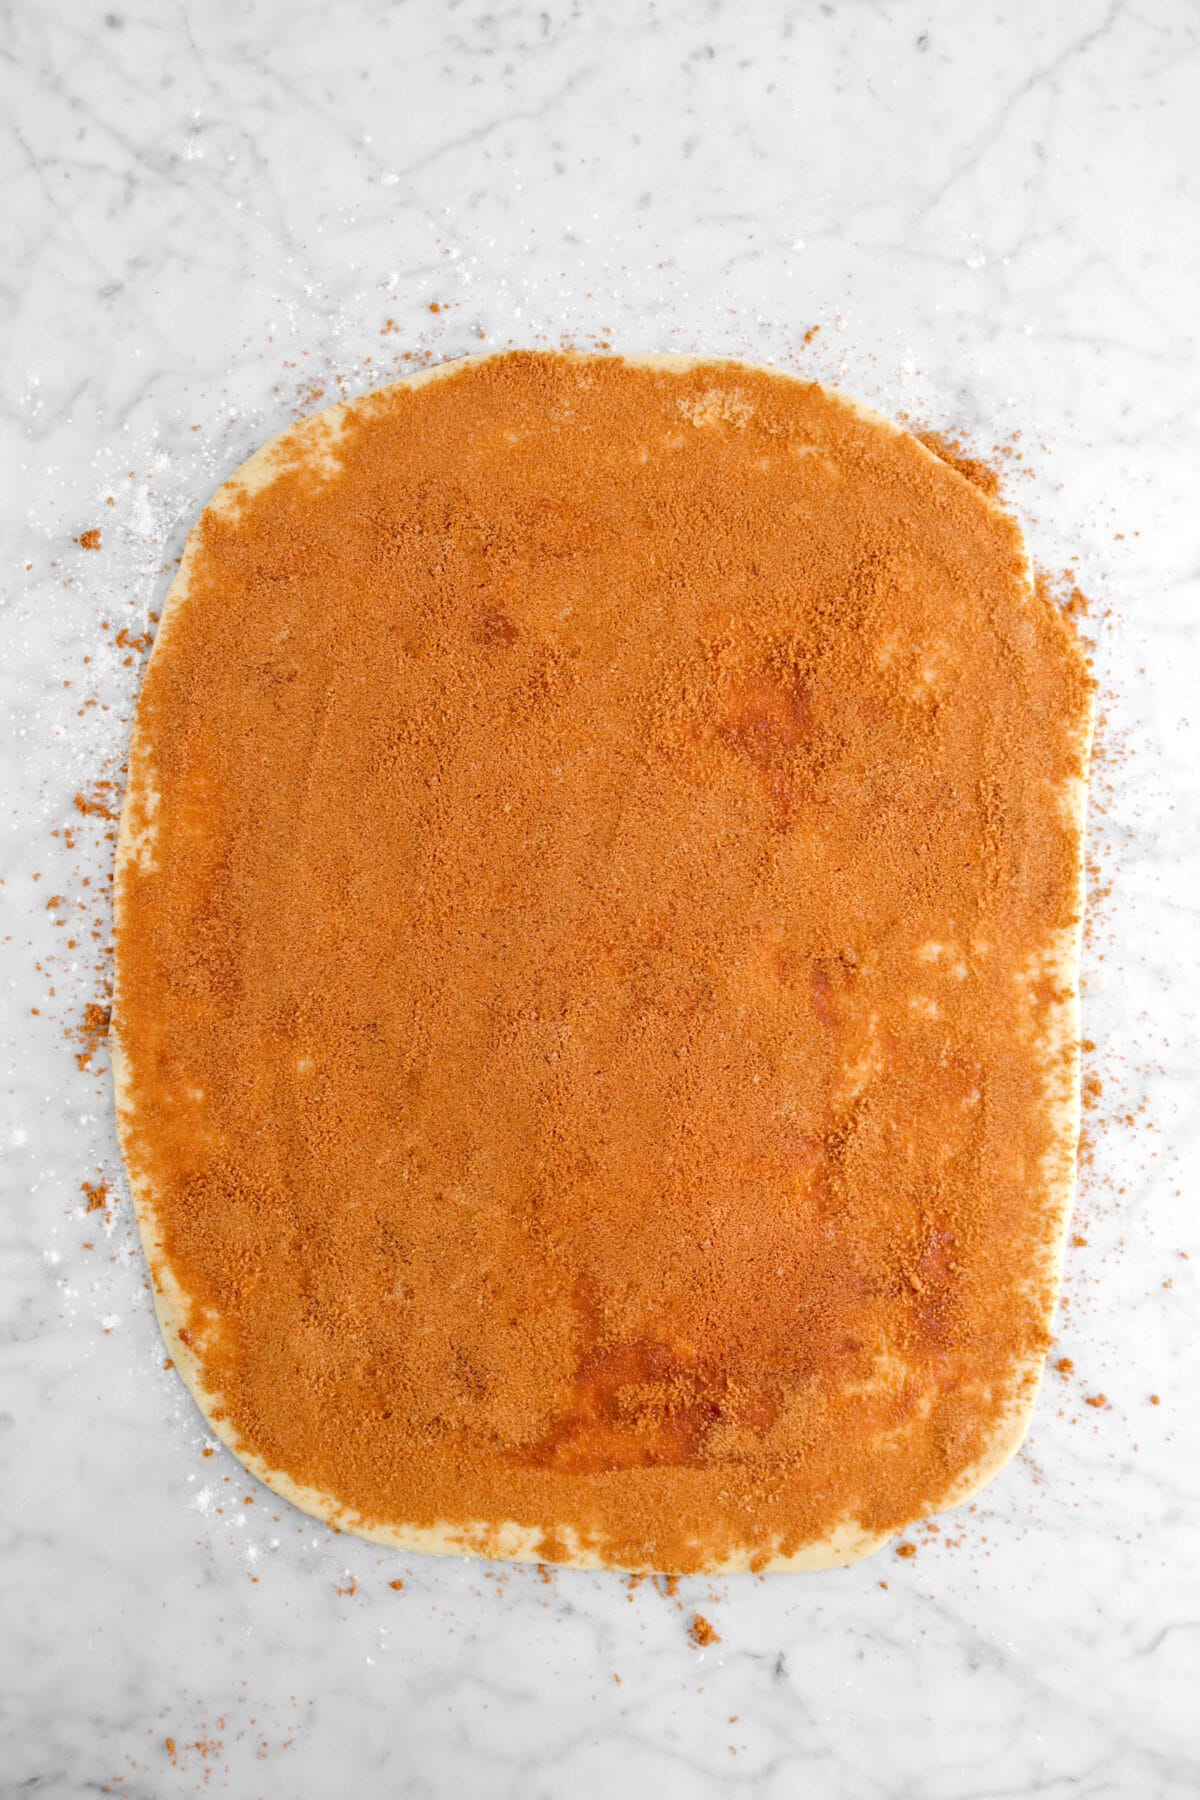 cinnamon sugar mixture spread across dough